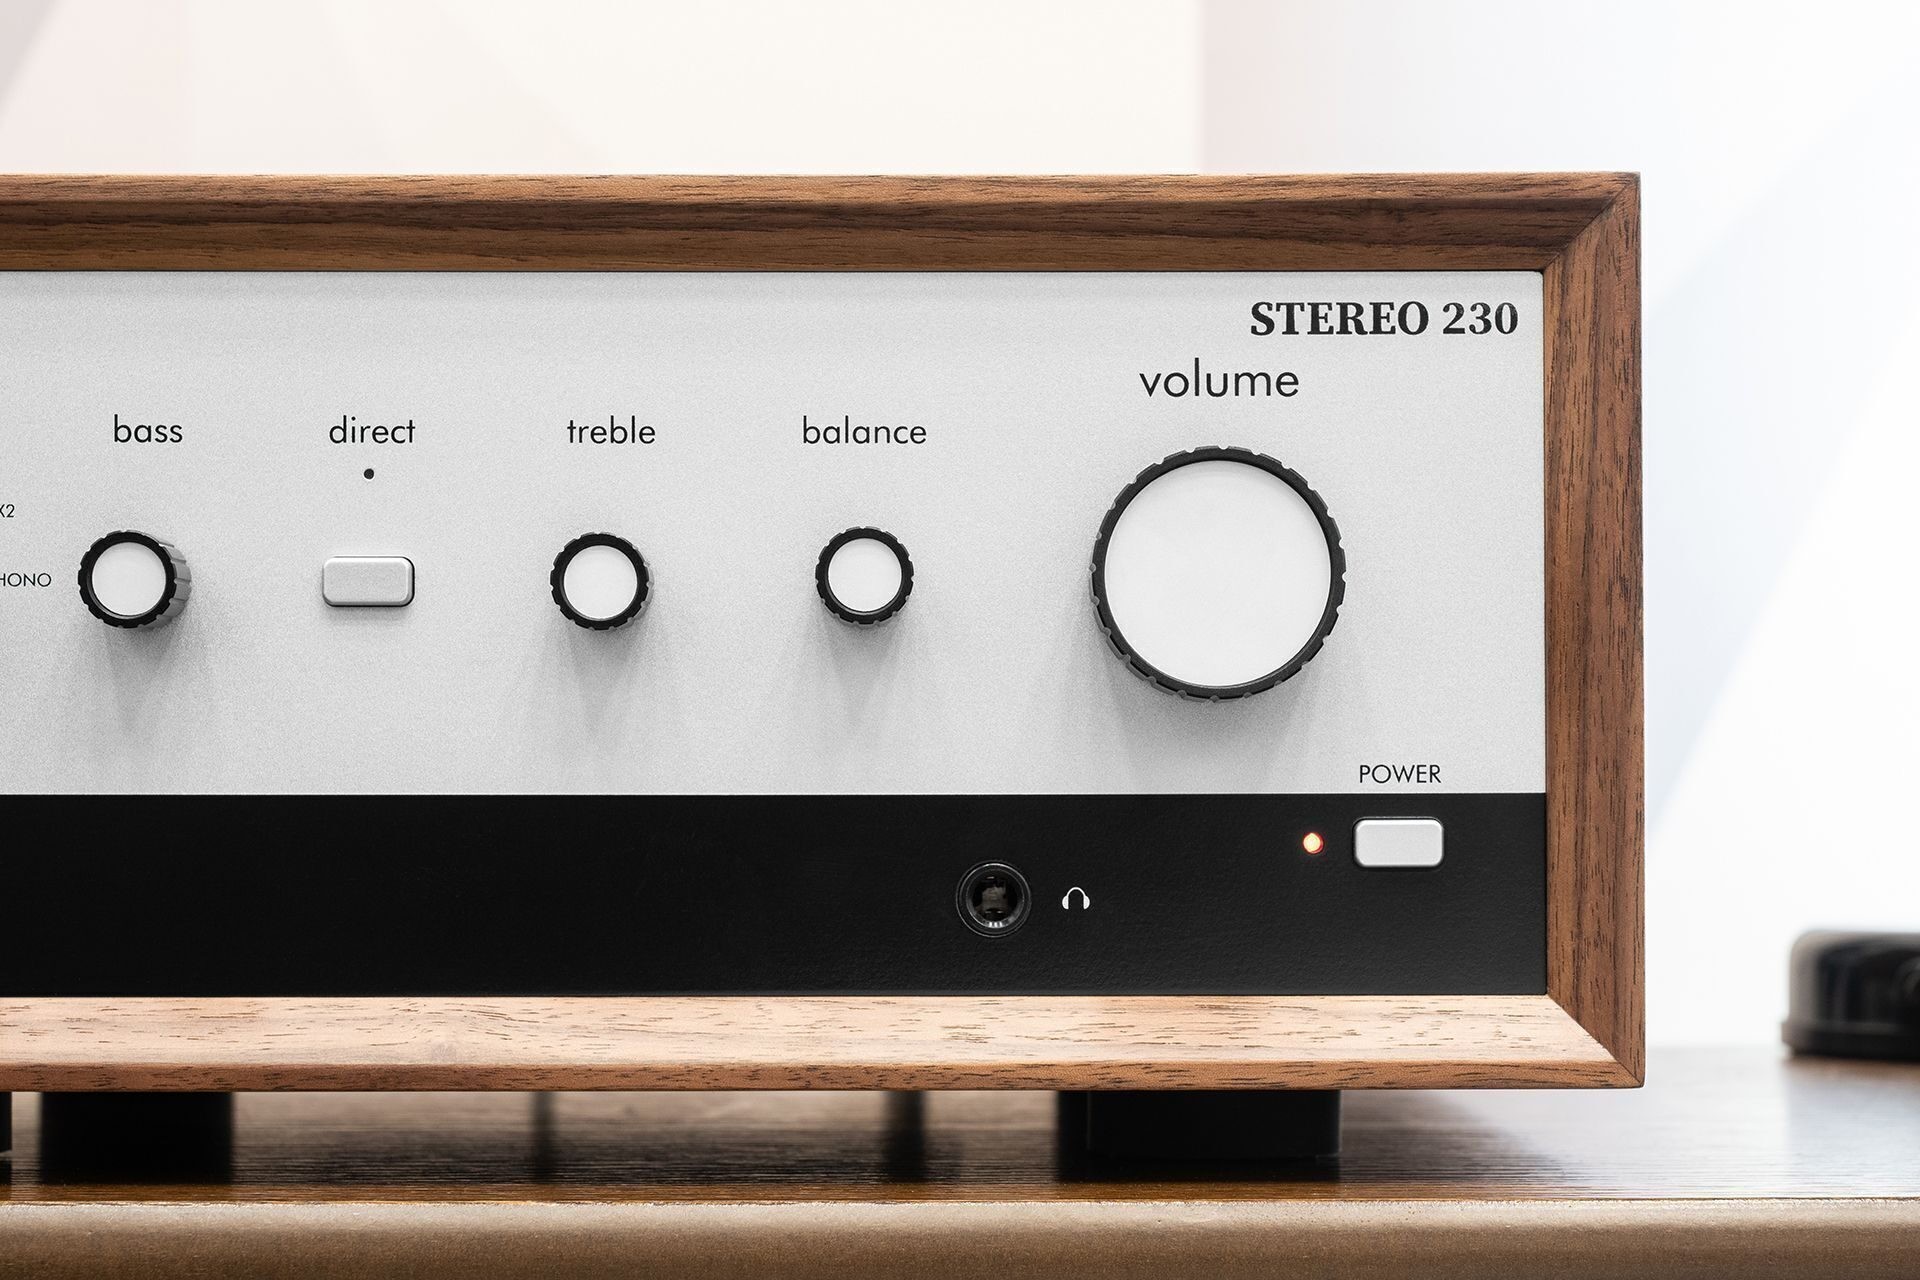 Leak Stereo 230